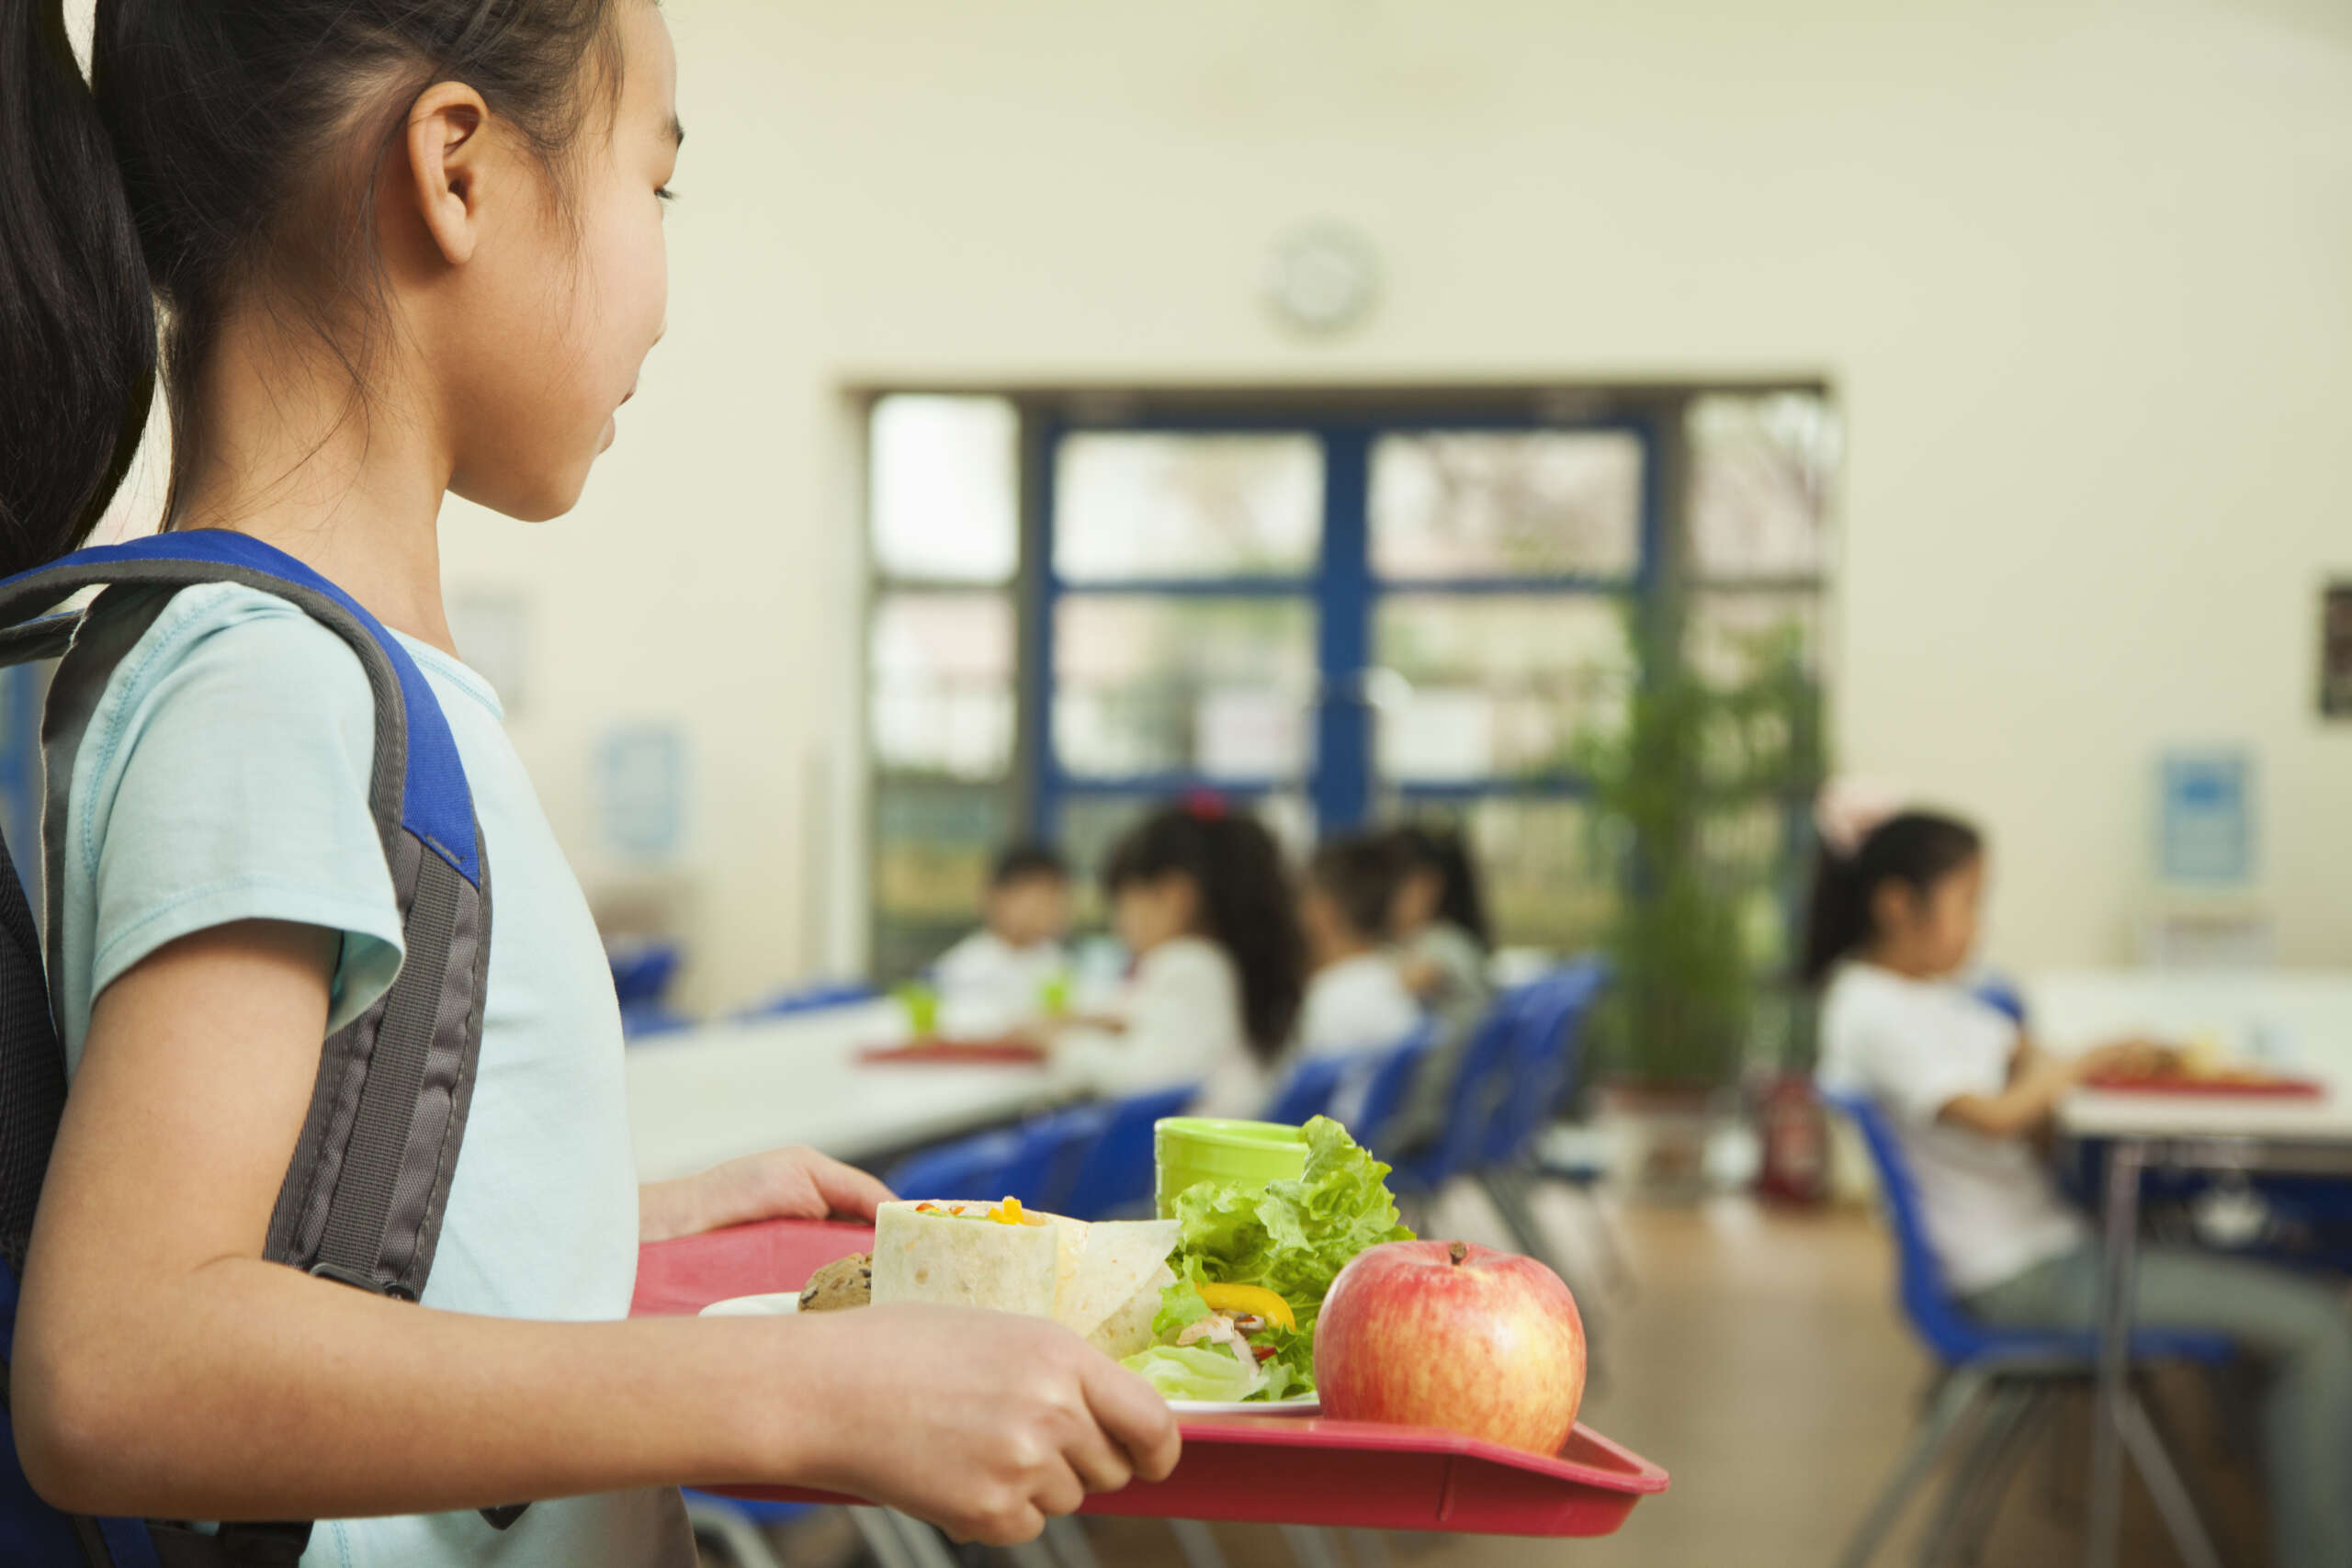 Le Minnesota devient le 4e État à offrir des repas gratuits à tous les enfants des écoles publiques